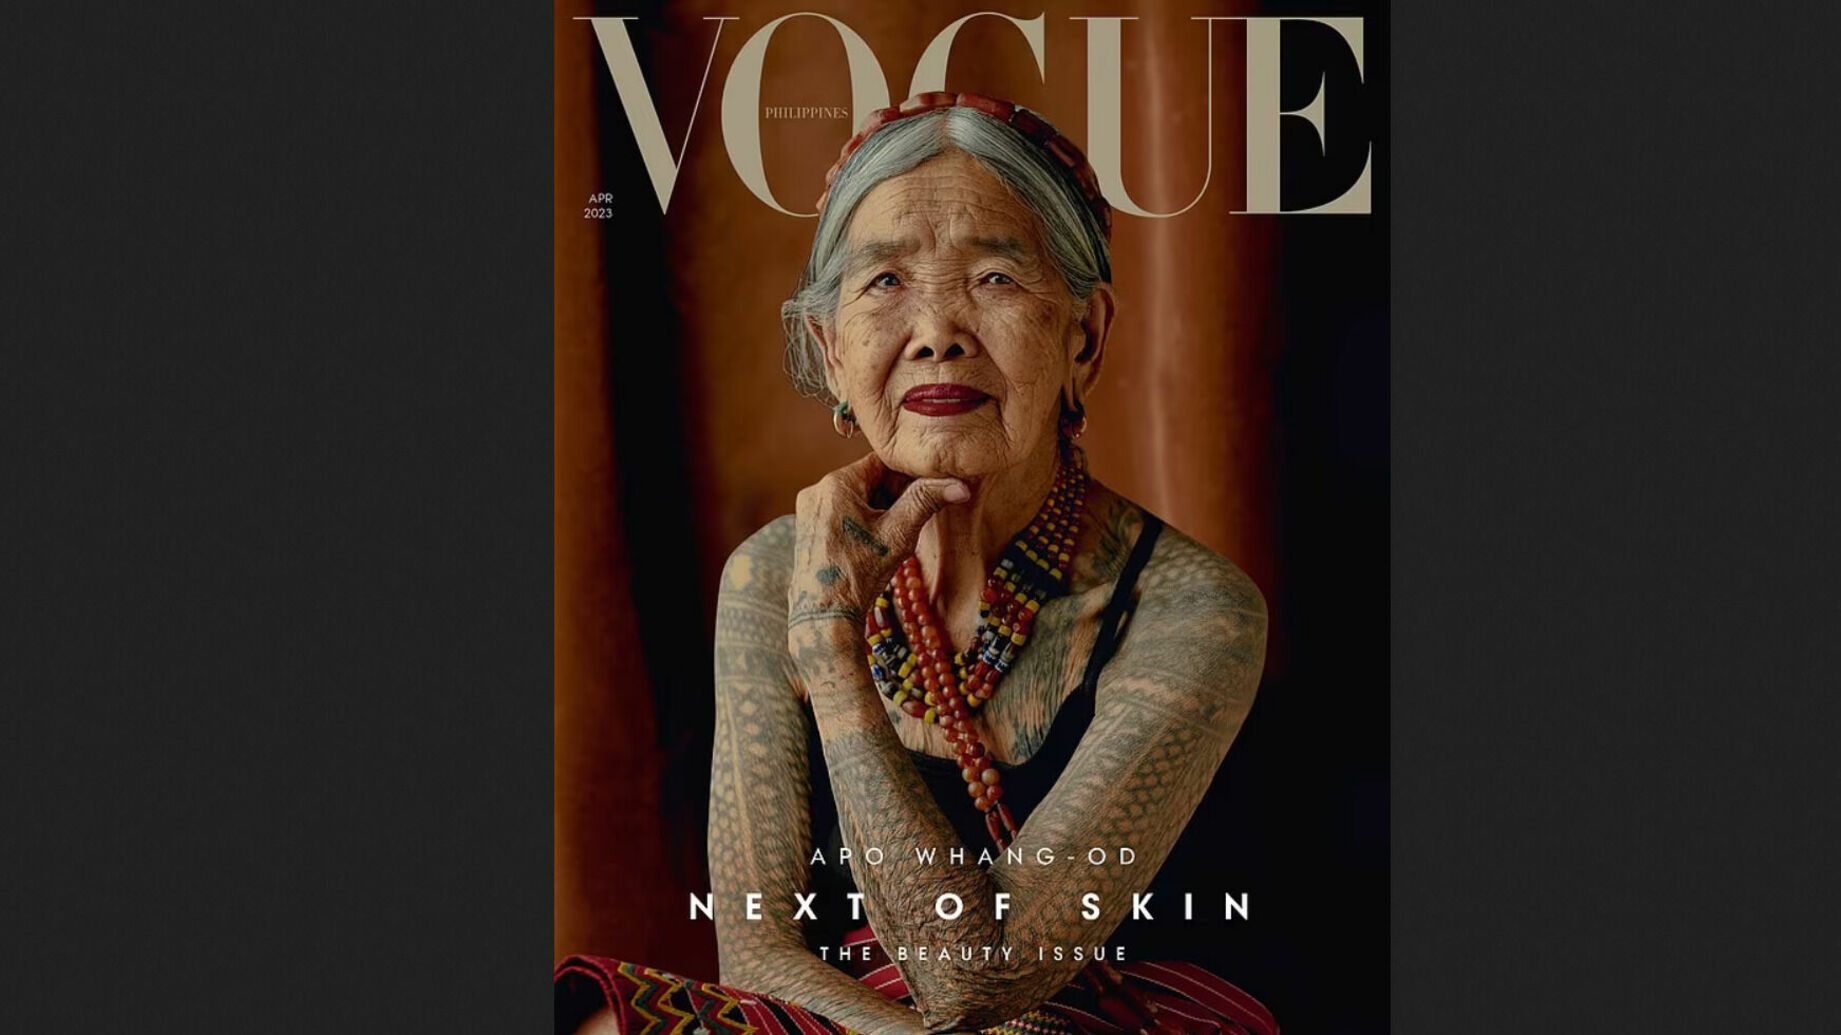 Vogue поместил на обложку фото 106-летней тату-художницы из Филиппин